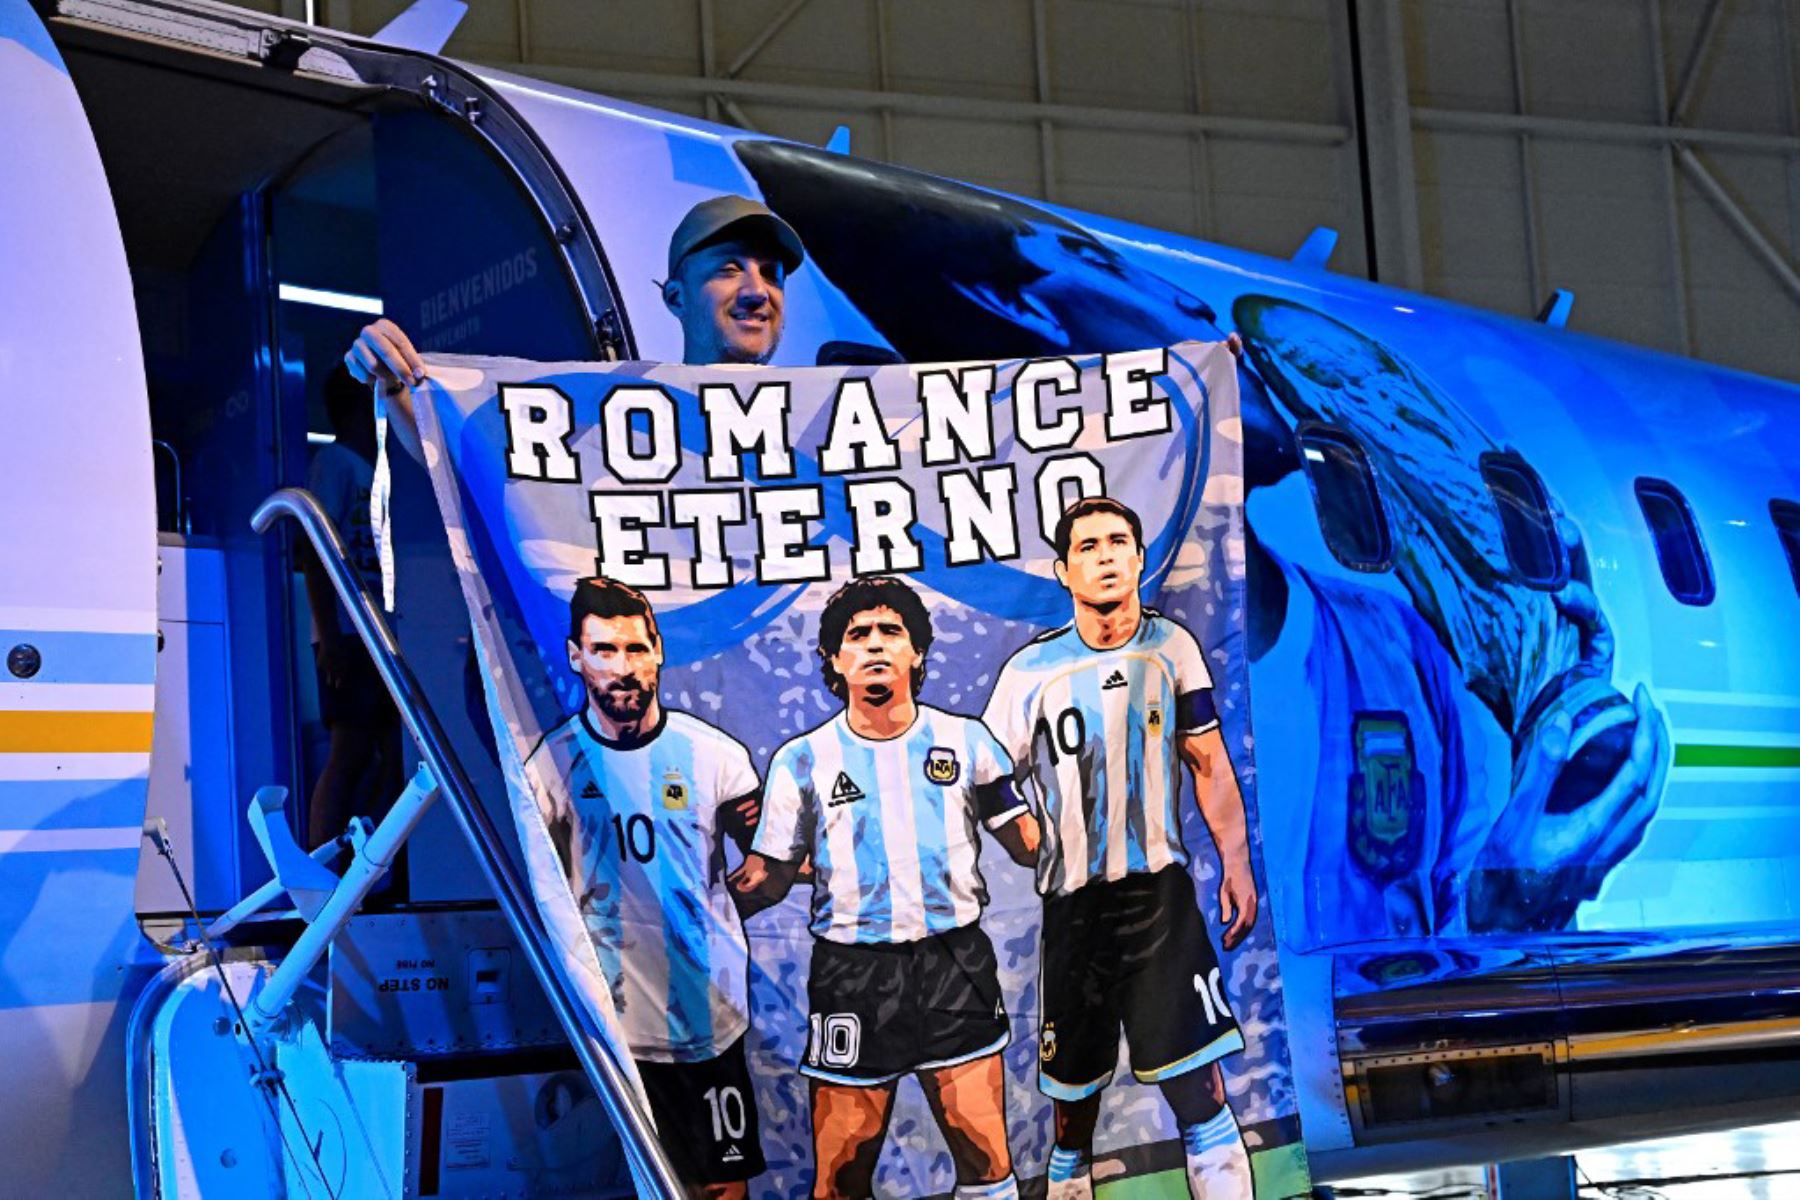 Fanáticos del argentino Diego Maradona, rinden homenaje en el segundo aniversario de la muerte de Maradona en una fan zone dedicada al argentino en el aeropuerto internacional de Doha. Foto: AFP